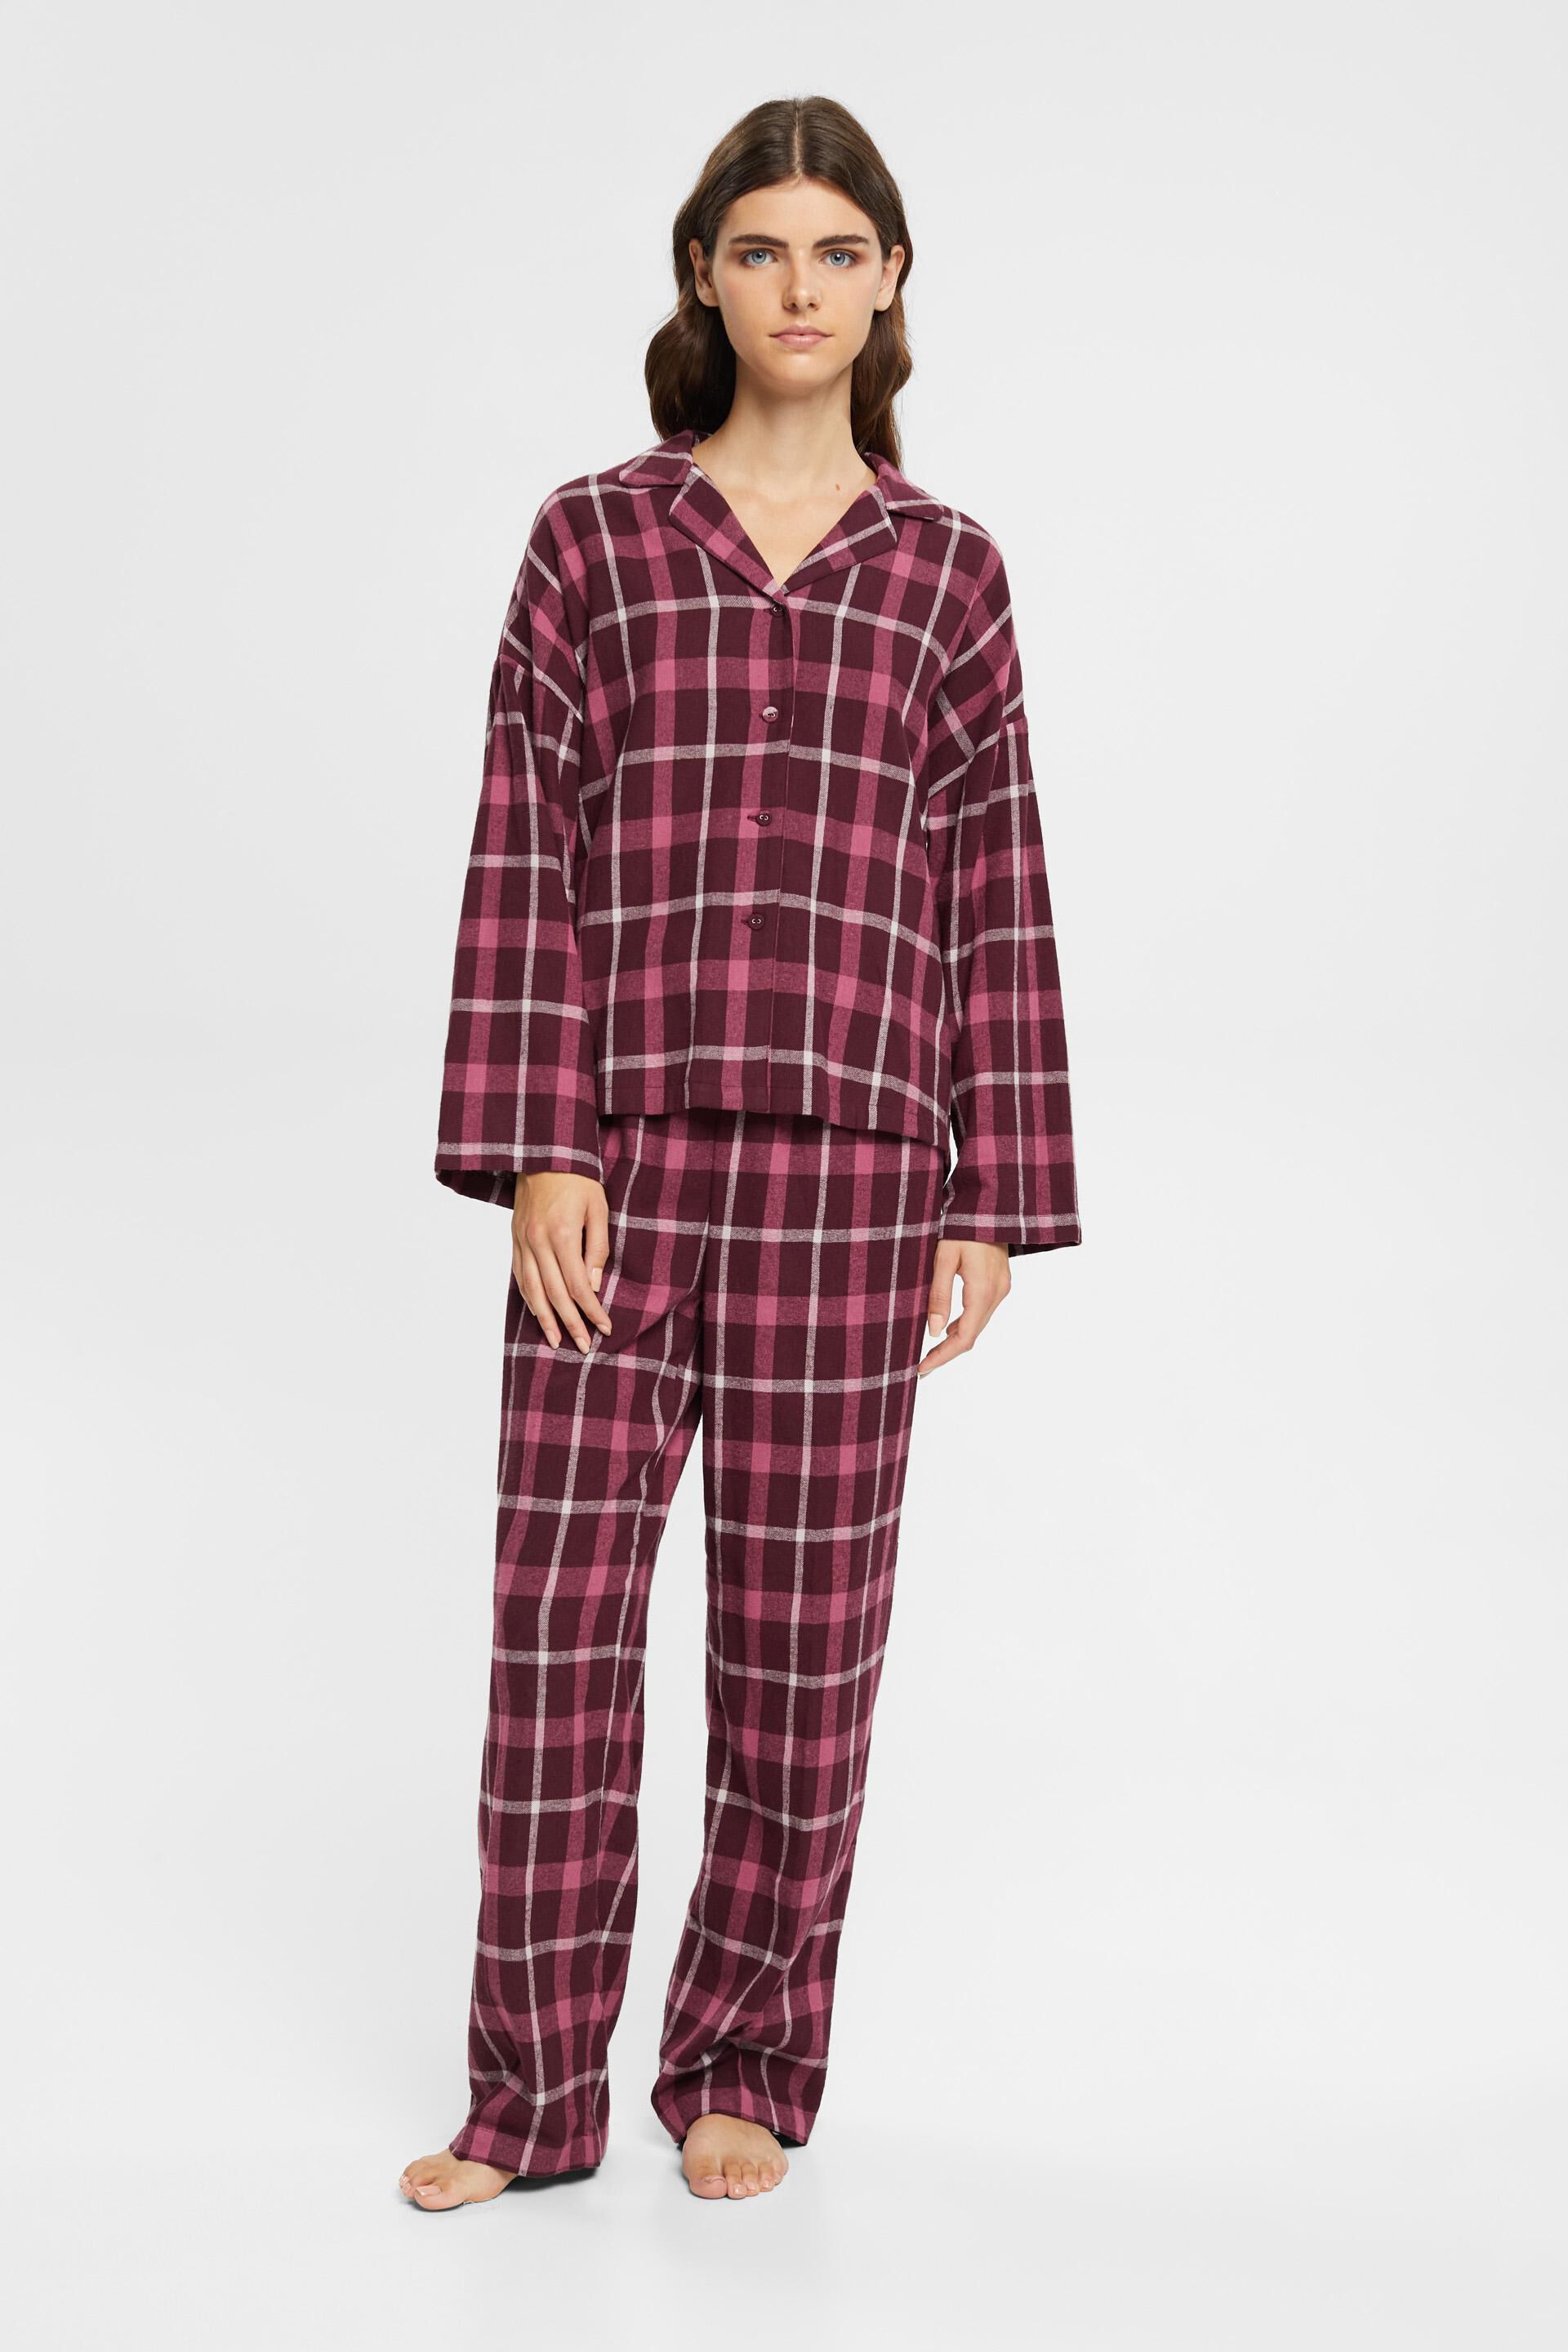 ik luister naar muziek bericht Verloren ESPRIT - Geruite flanellen pyjama in onze e-shop